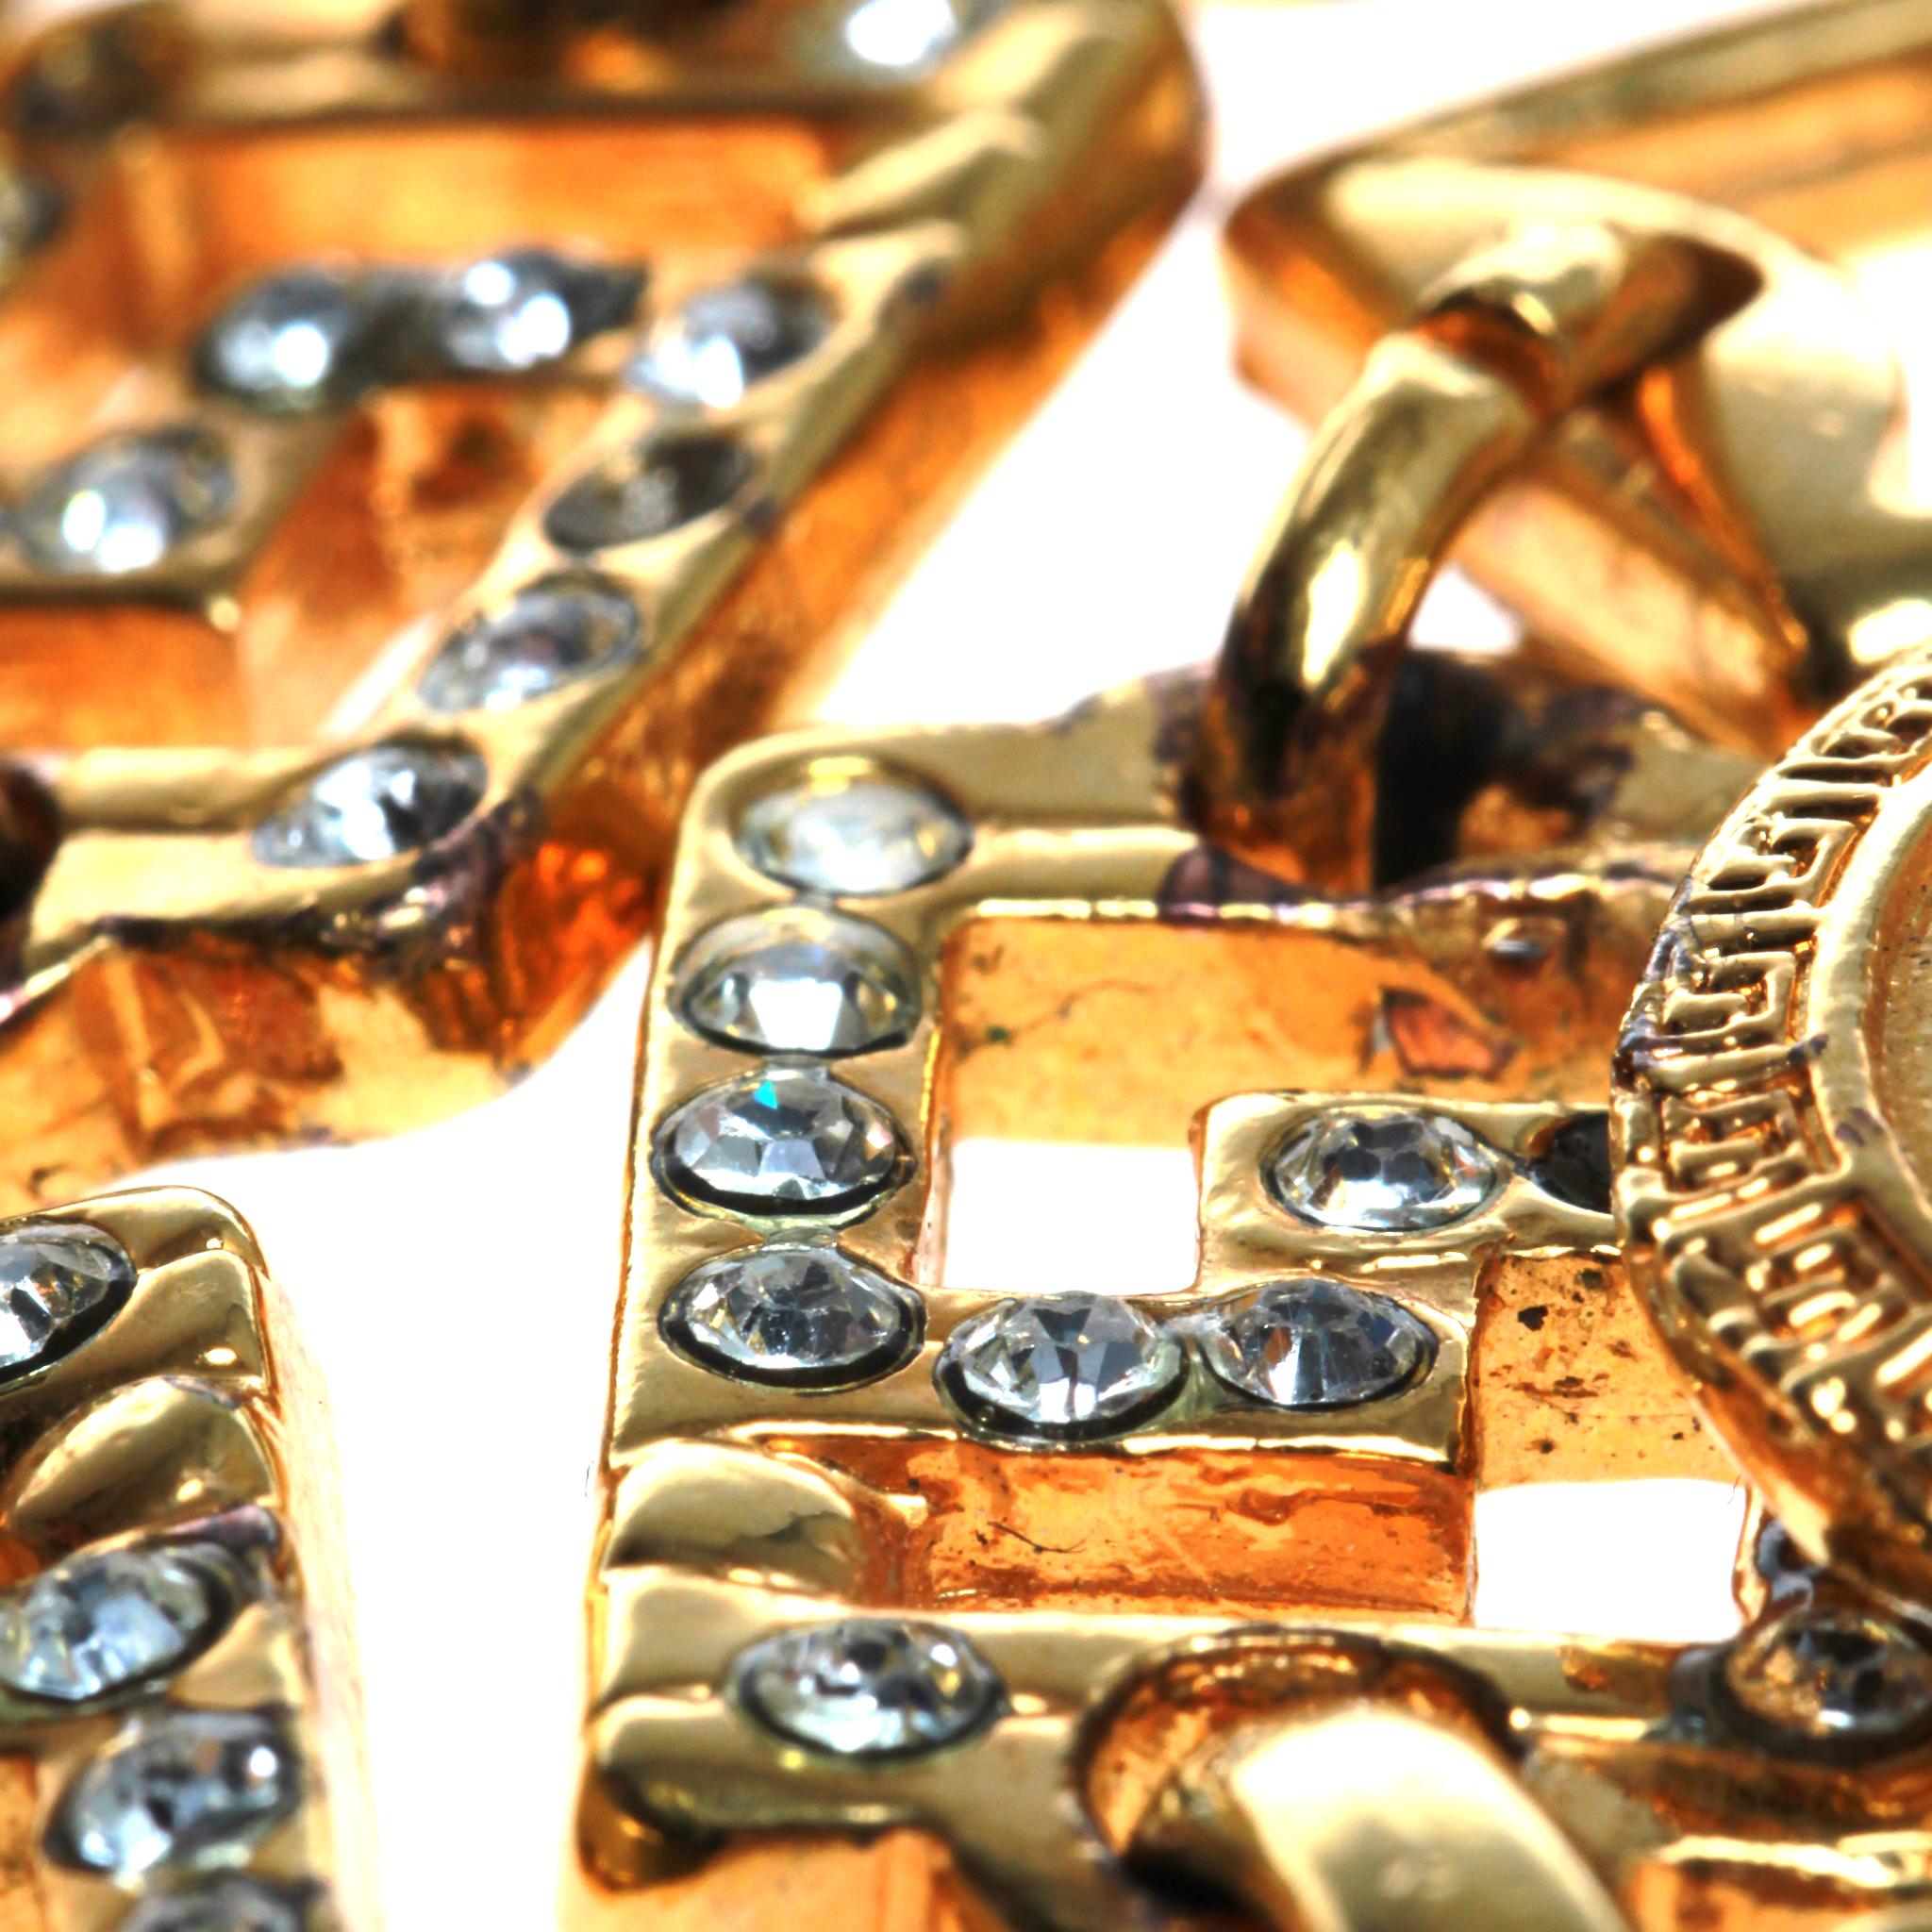 versace chain belt gold